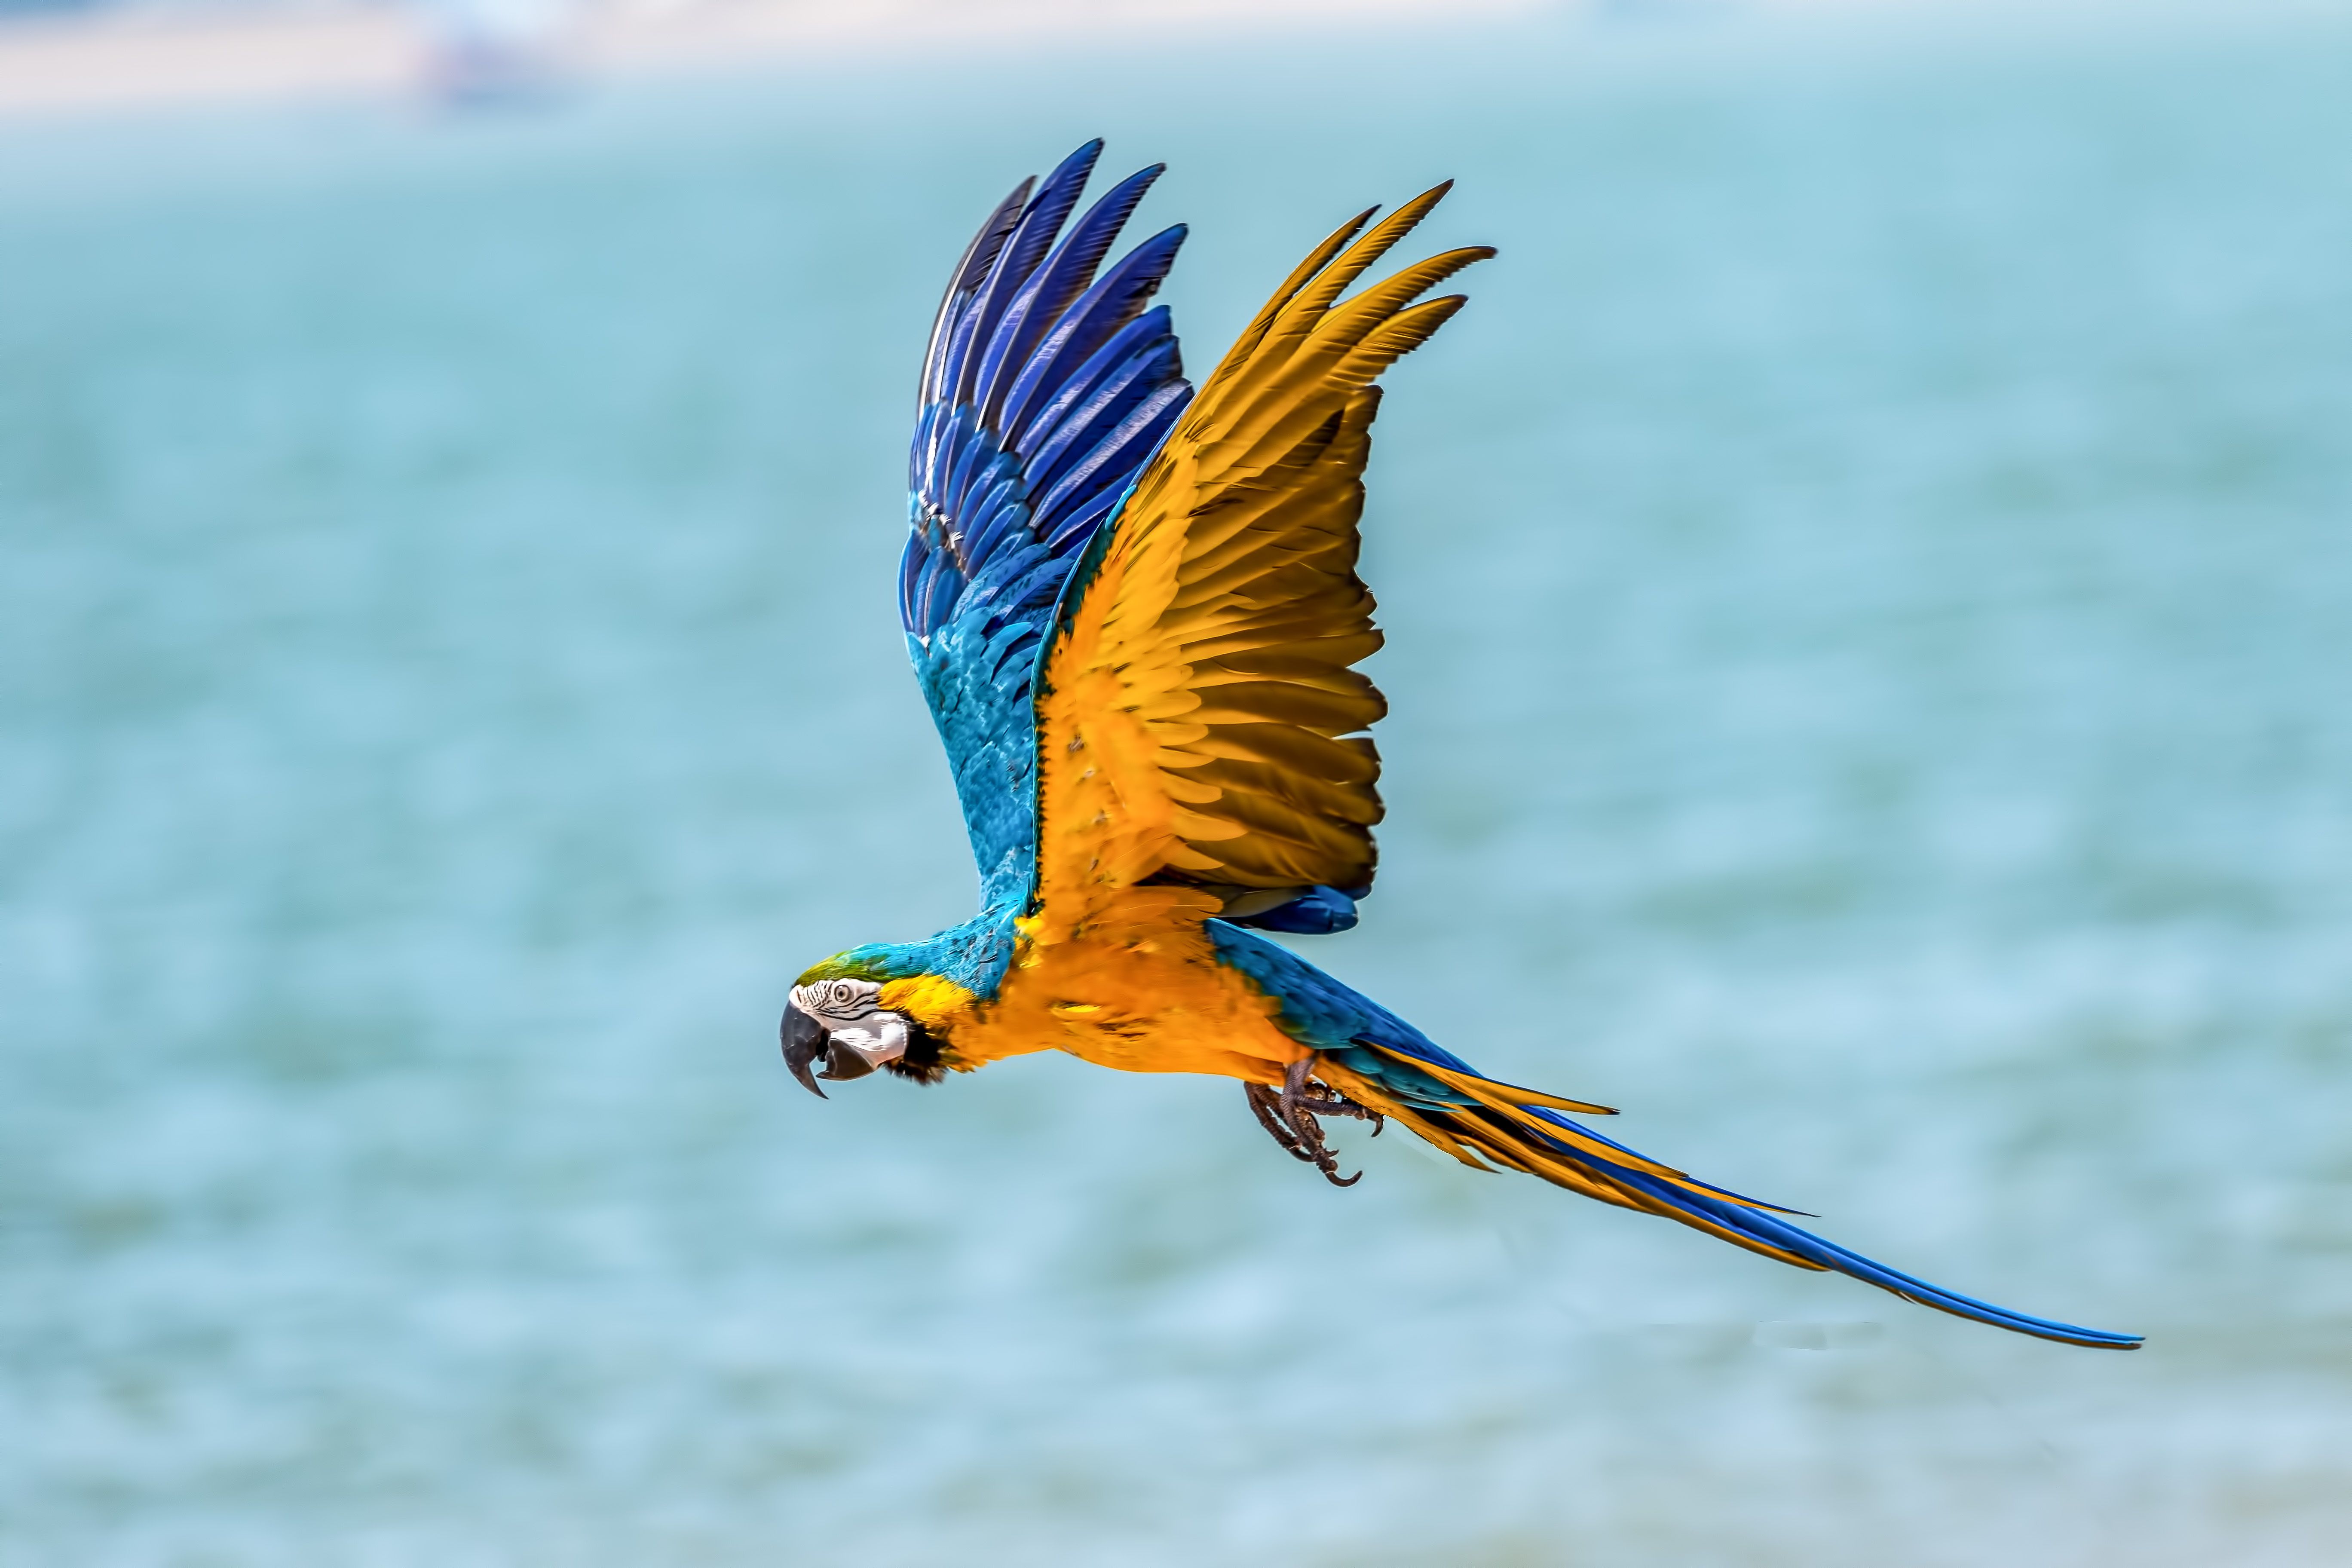 عکس پرواز چشم نواز یک پرنده وحشی بر فراز دریای آبی دیدنی